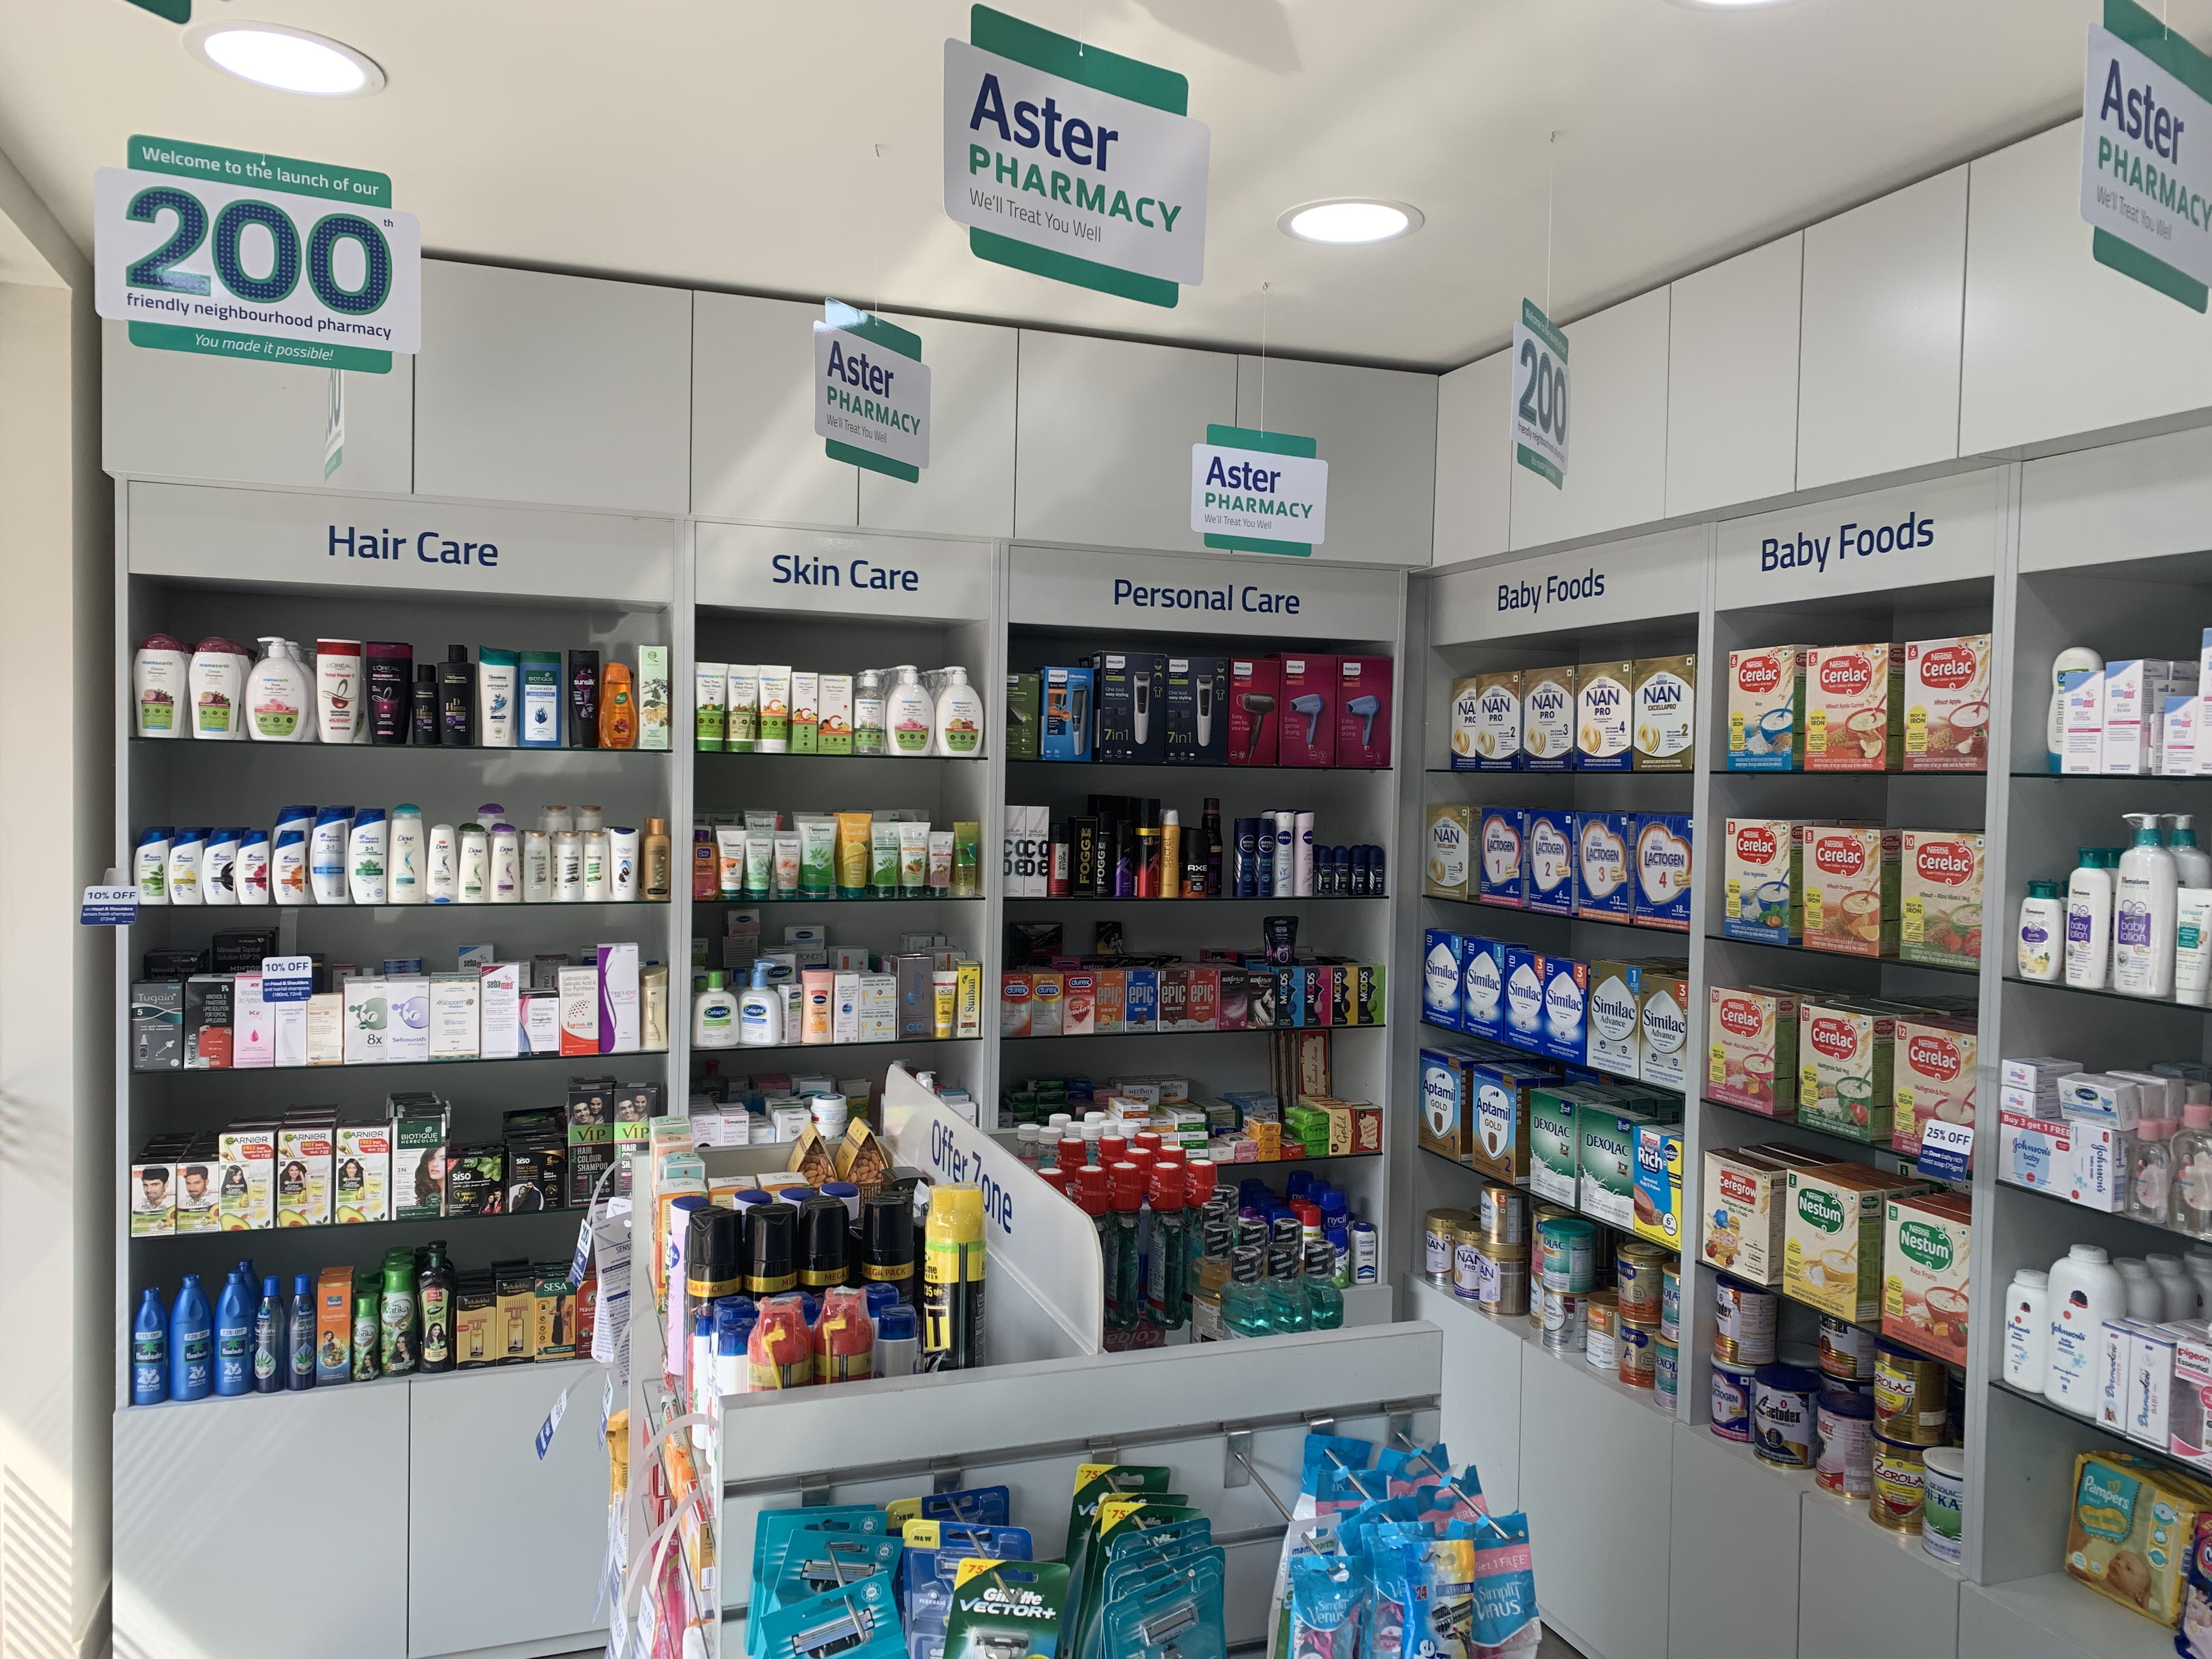 Aster Pharmacy in Sasthamangalam, Trivandrum